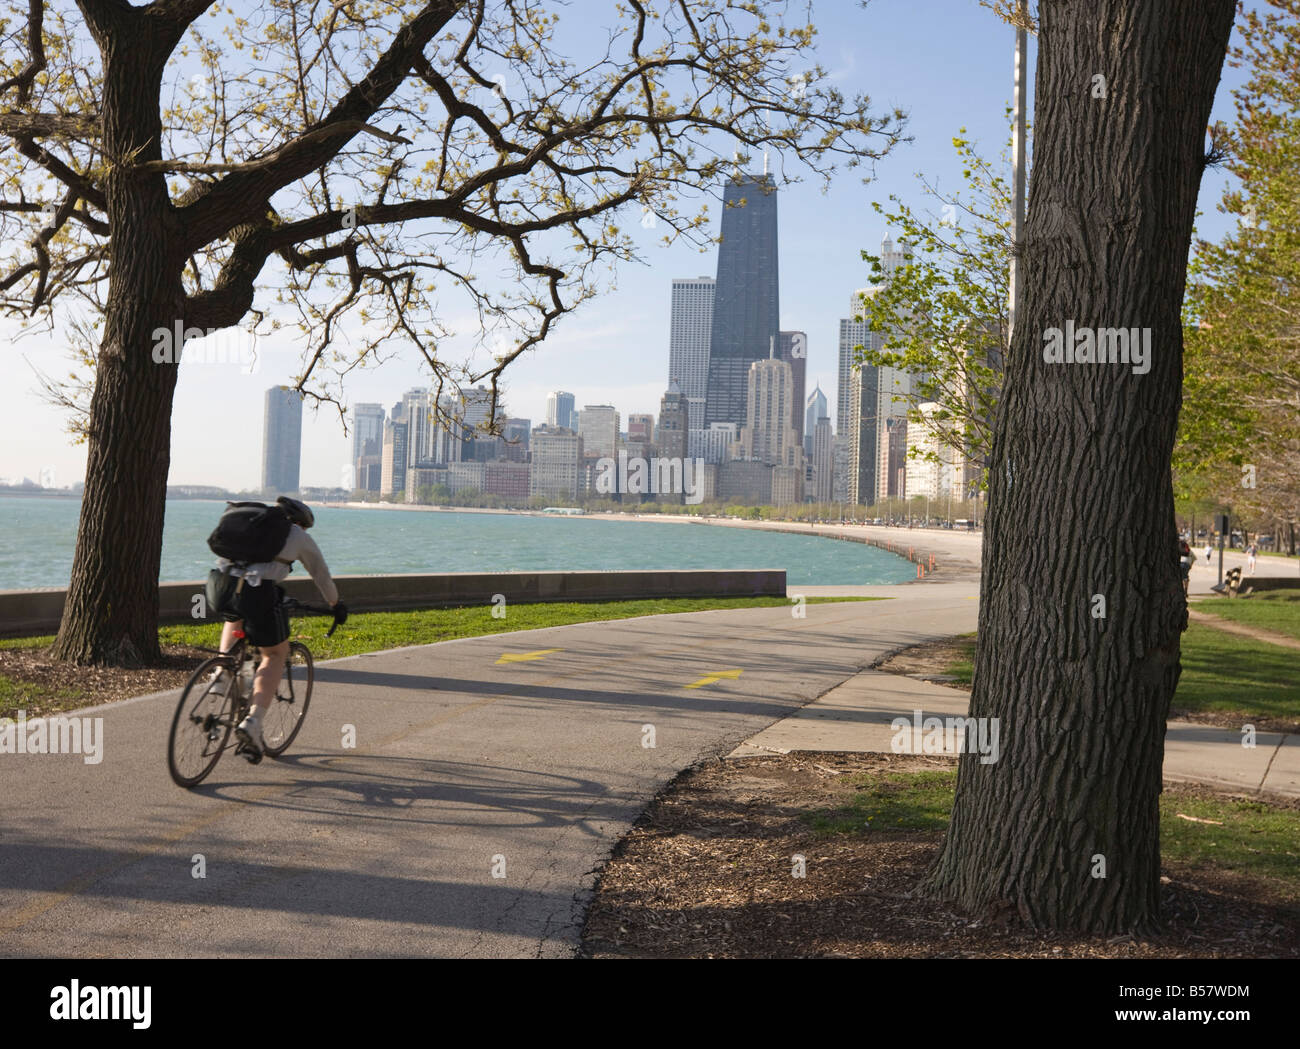 Par cycliste le lac Michigan shore, Gold Coast District, Chicago, Illinois, États-Unis d'Amérique, Amérique du Nord Banque D'Images